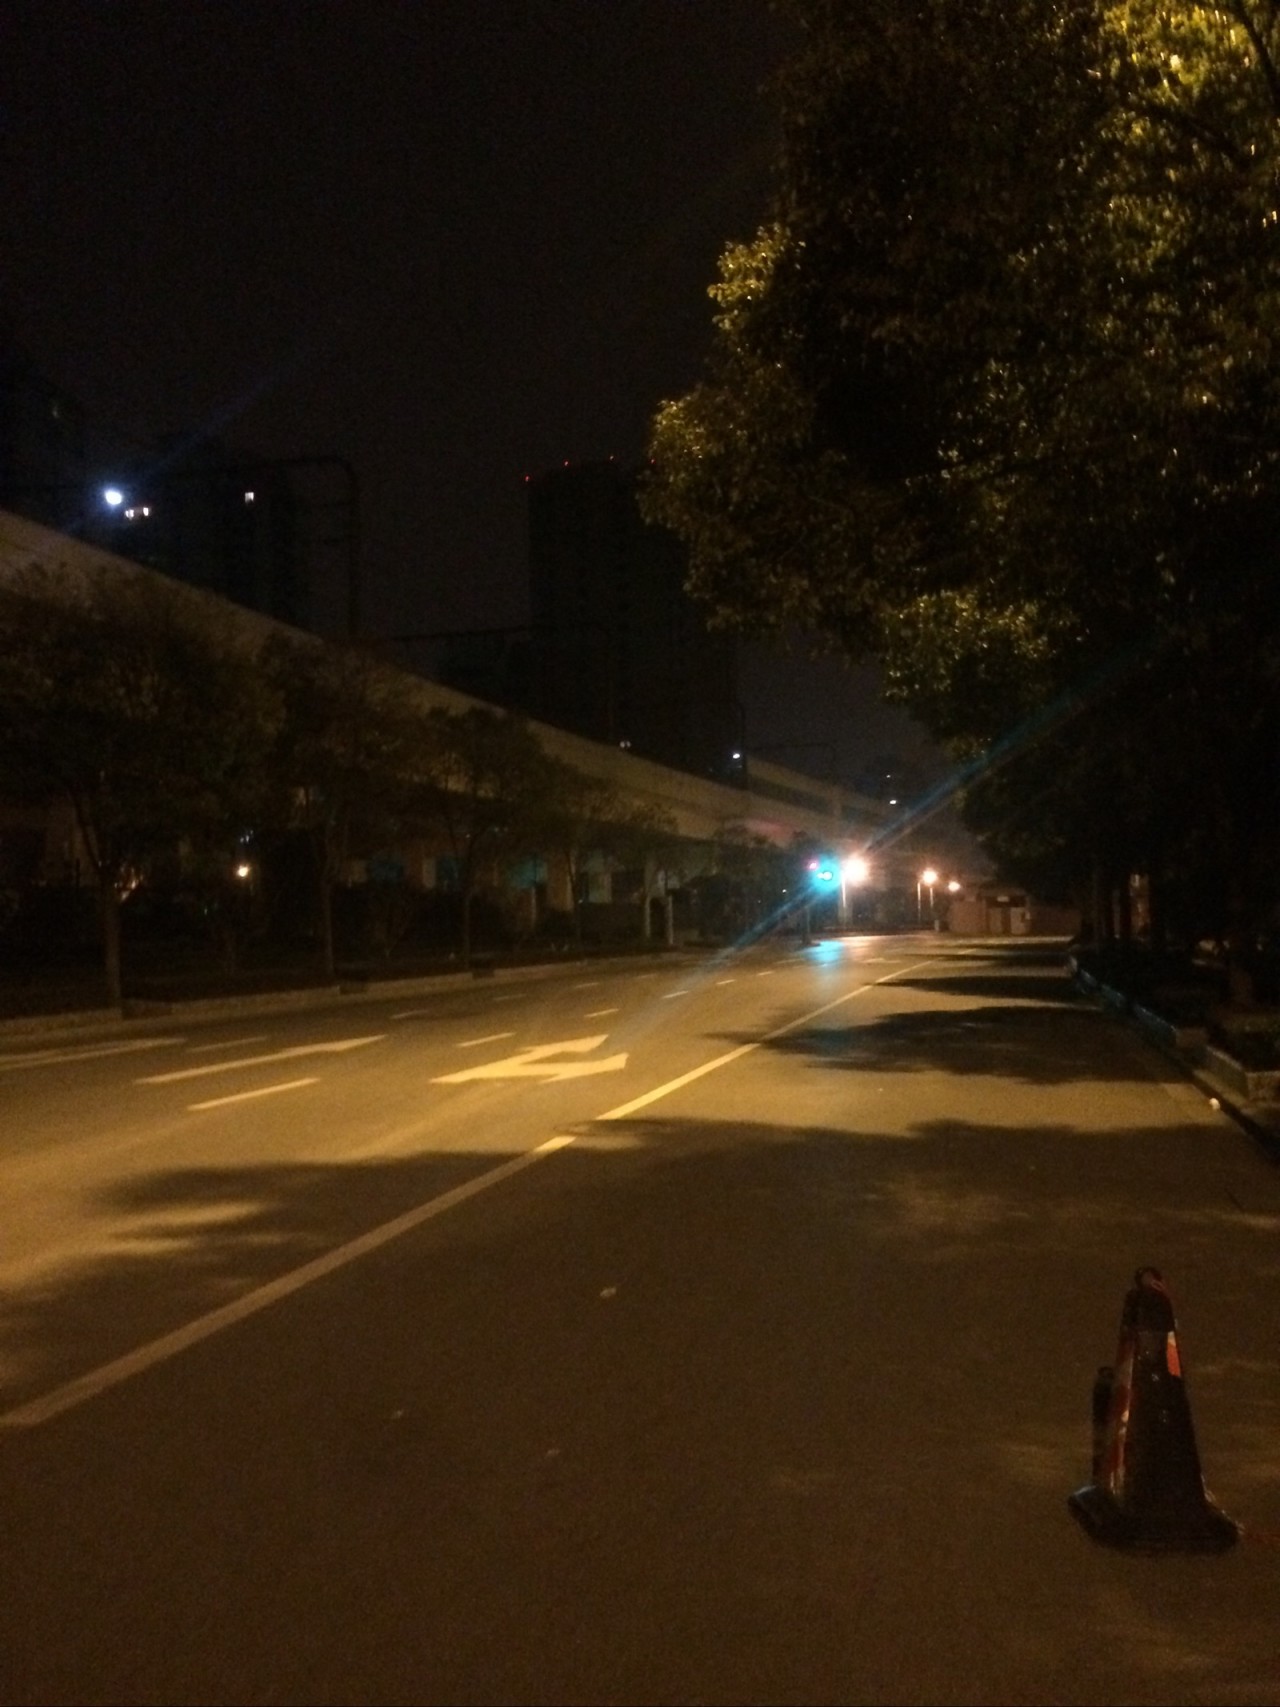 和千走在,冷风阵阵的凌晨街道